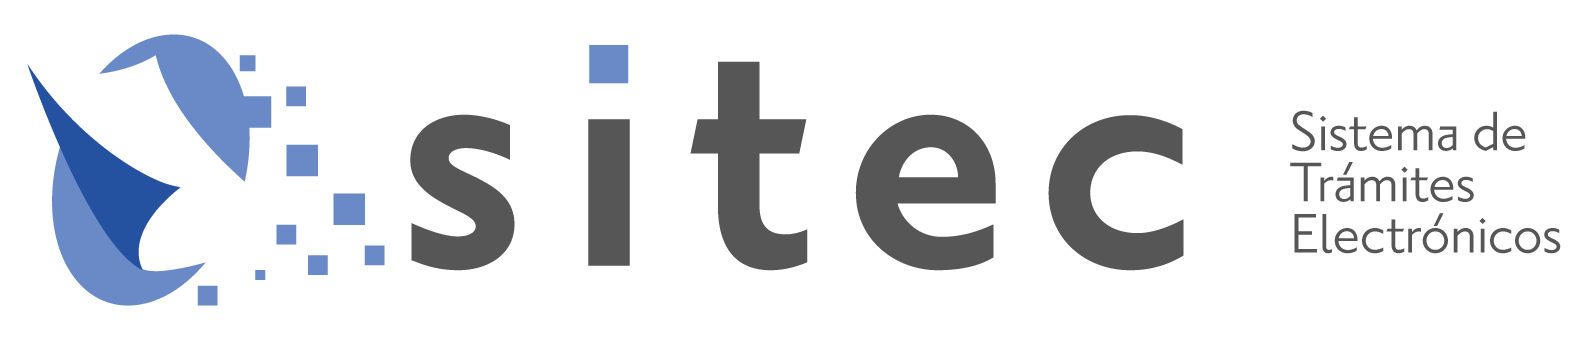 Logo COFECE